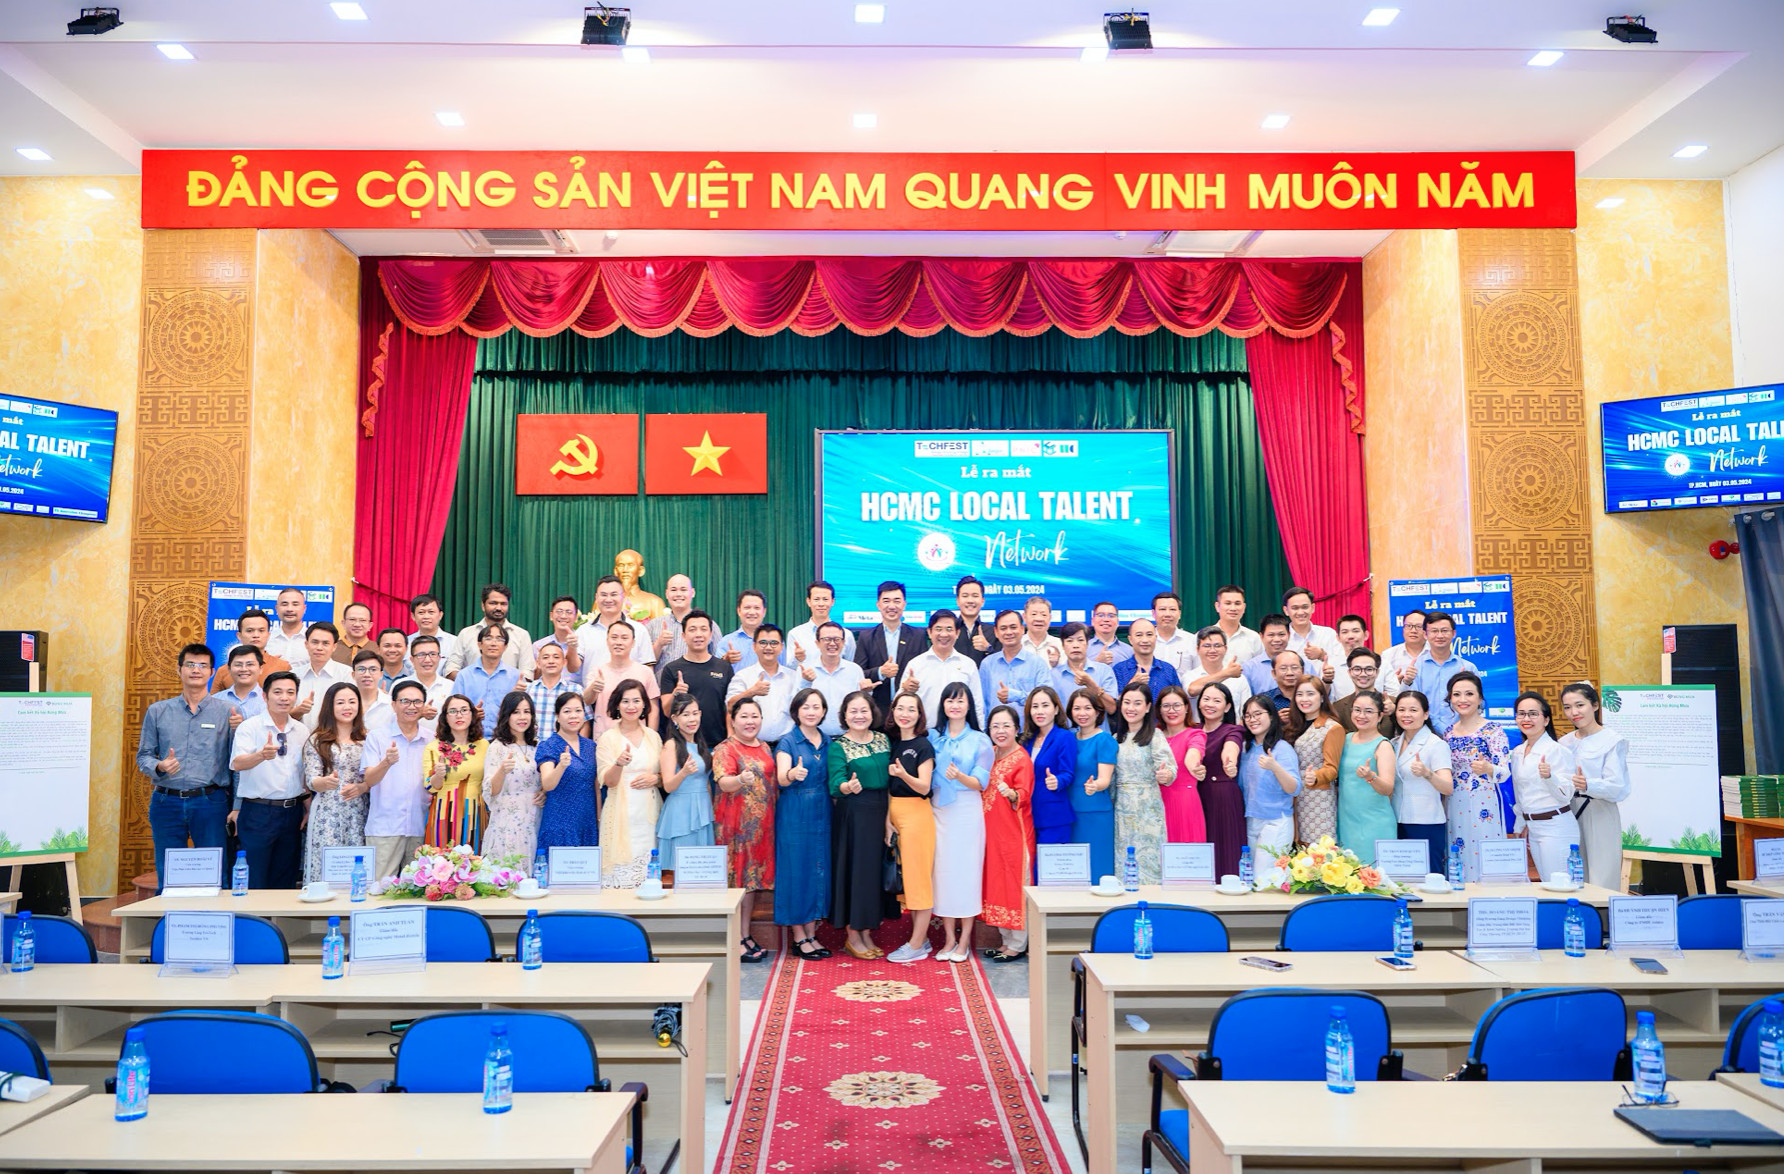 Ra mắt HCMC Local Talent Network – Cú hích mới cho đổi mới sáng tạo